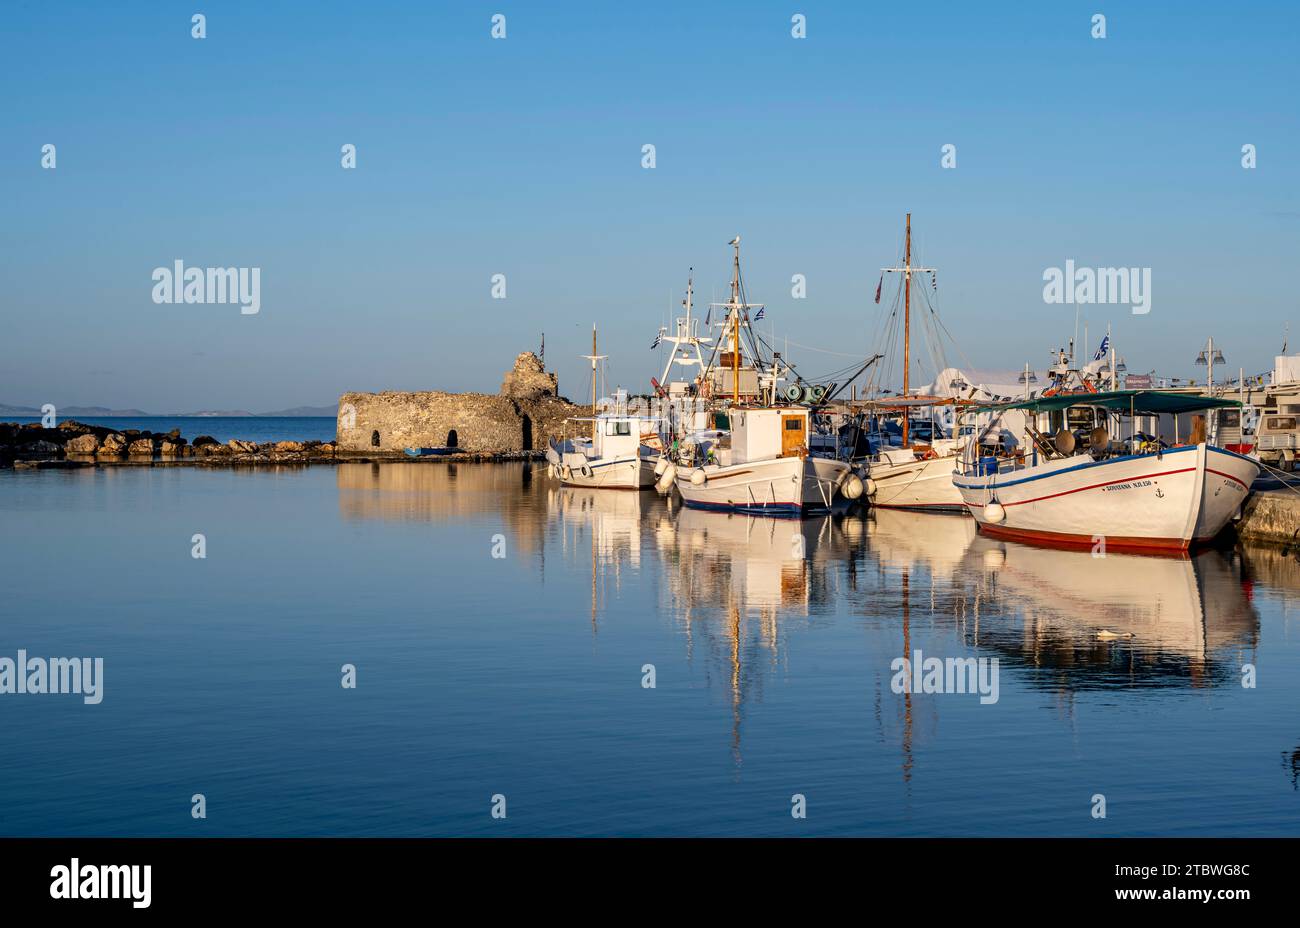 Bateaux de pêche dans le port et les ruines du château vénitien, reflétés dans la mer, au coucher du soleil, Naoussa, Paros, Cyclades, Grèce Banque D'Images